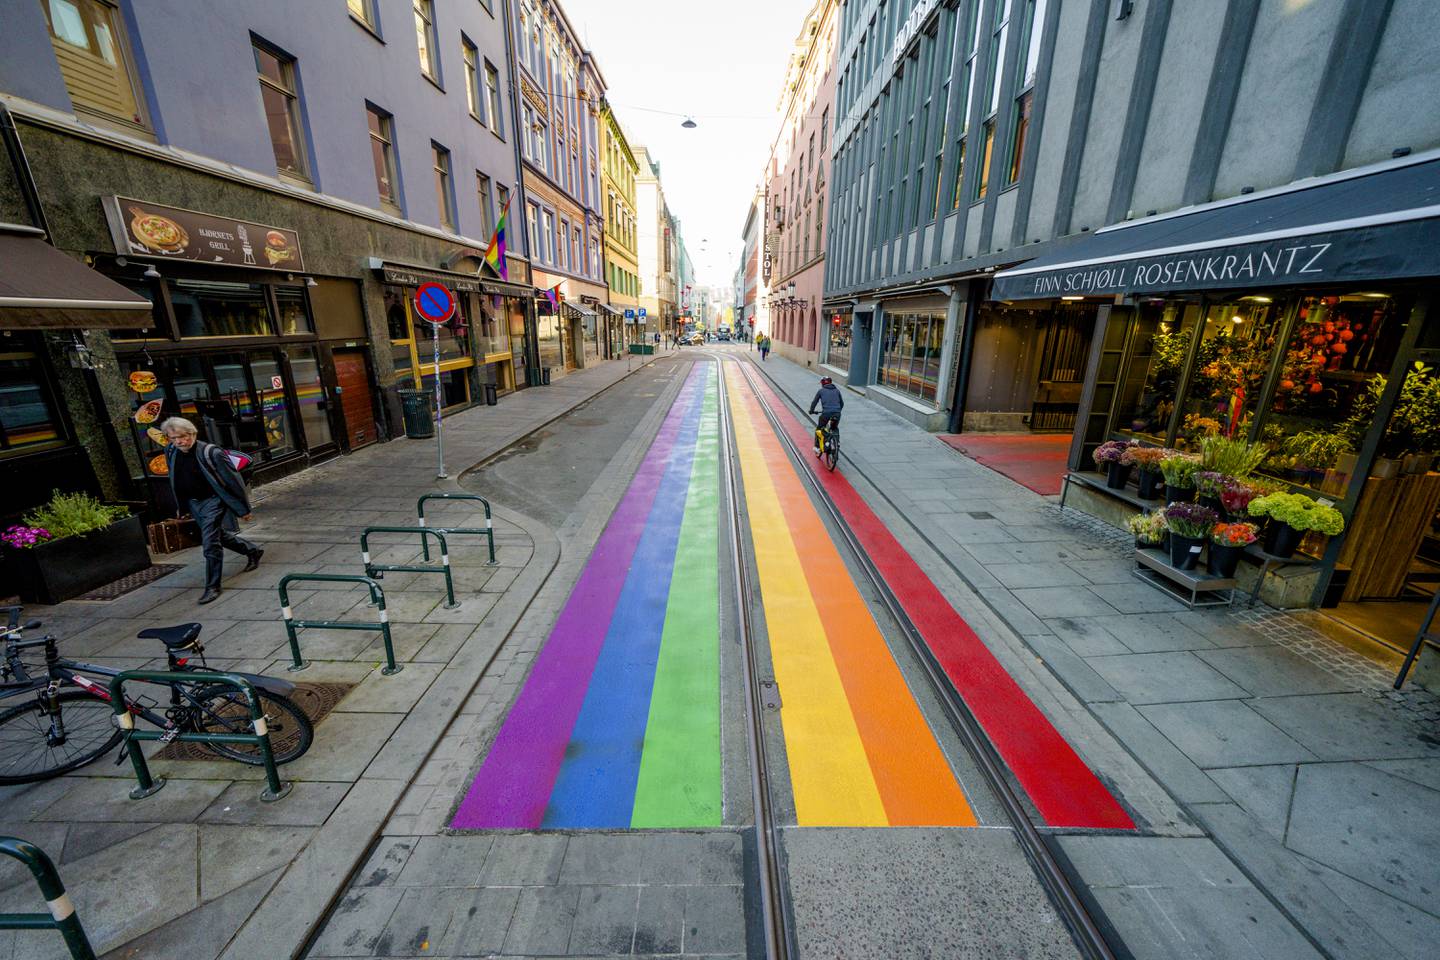 Bildet viser regnbuefarger i Rosenkrantz gate i Oslo.